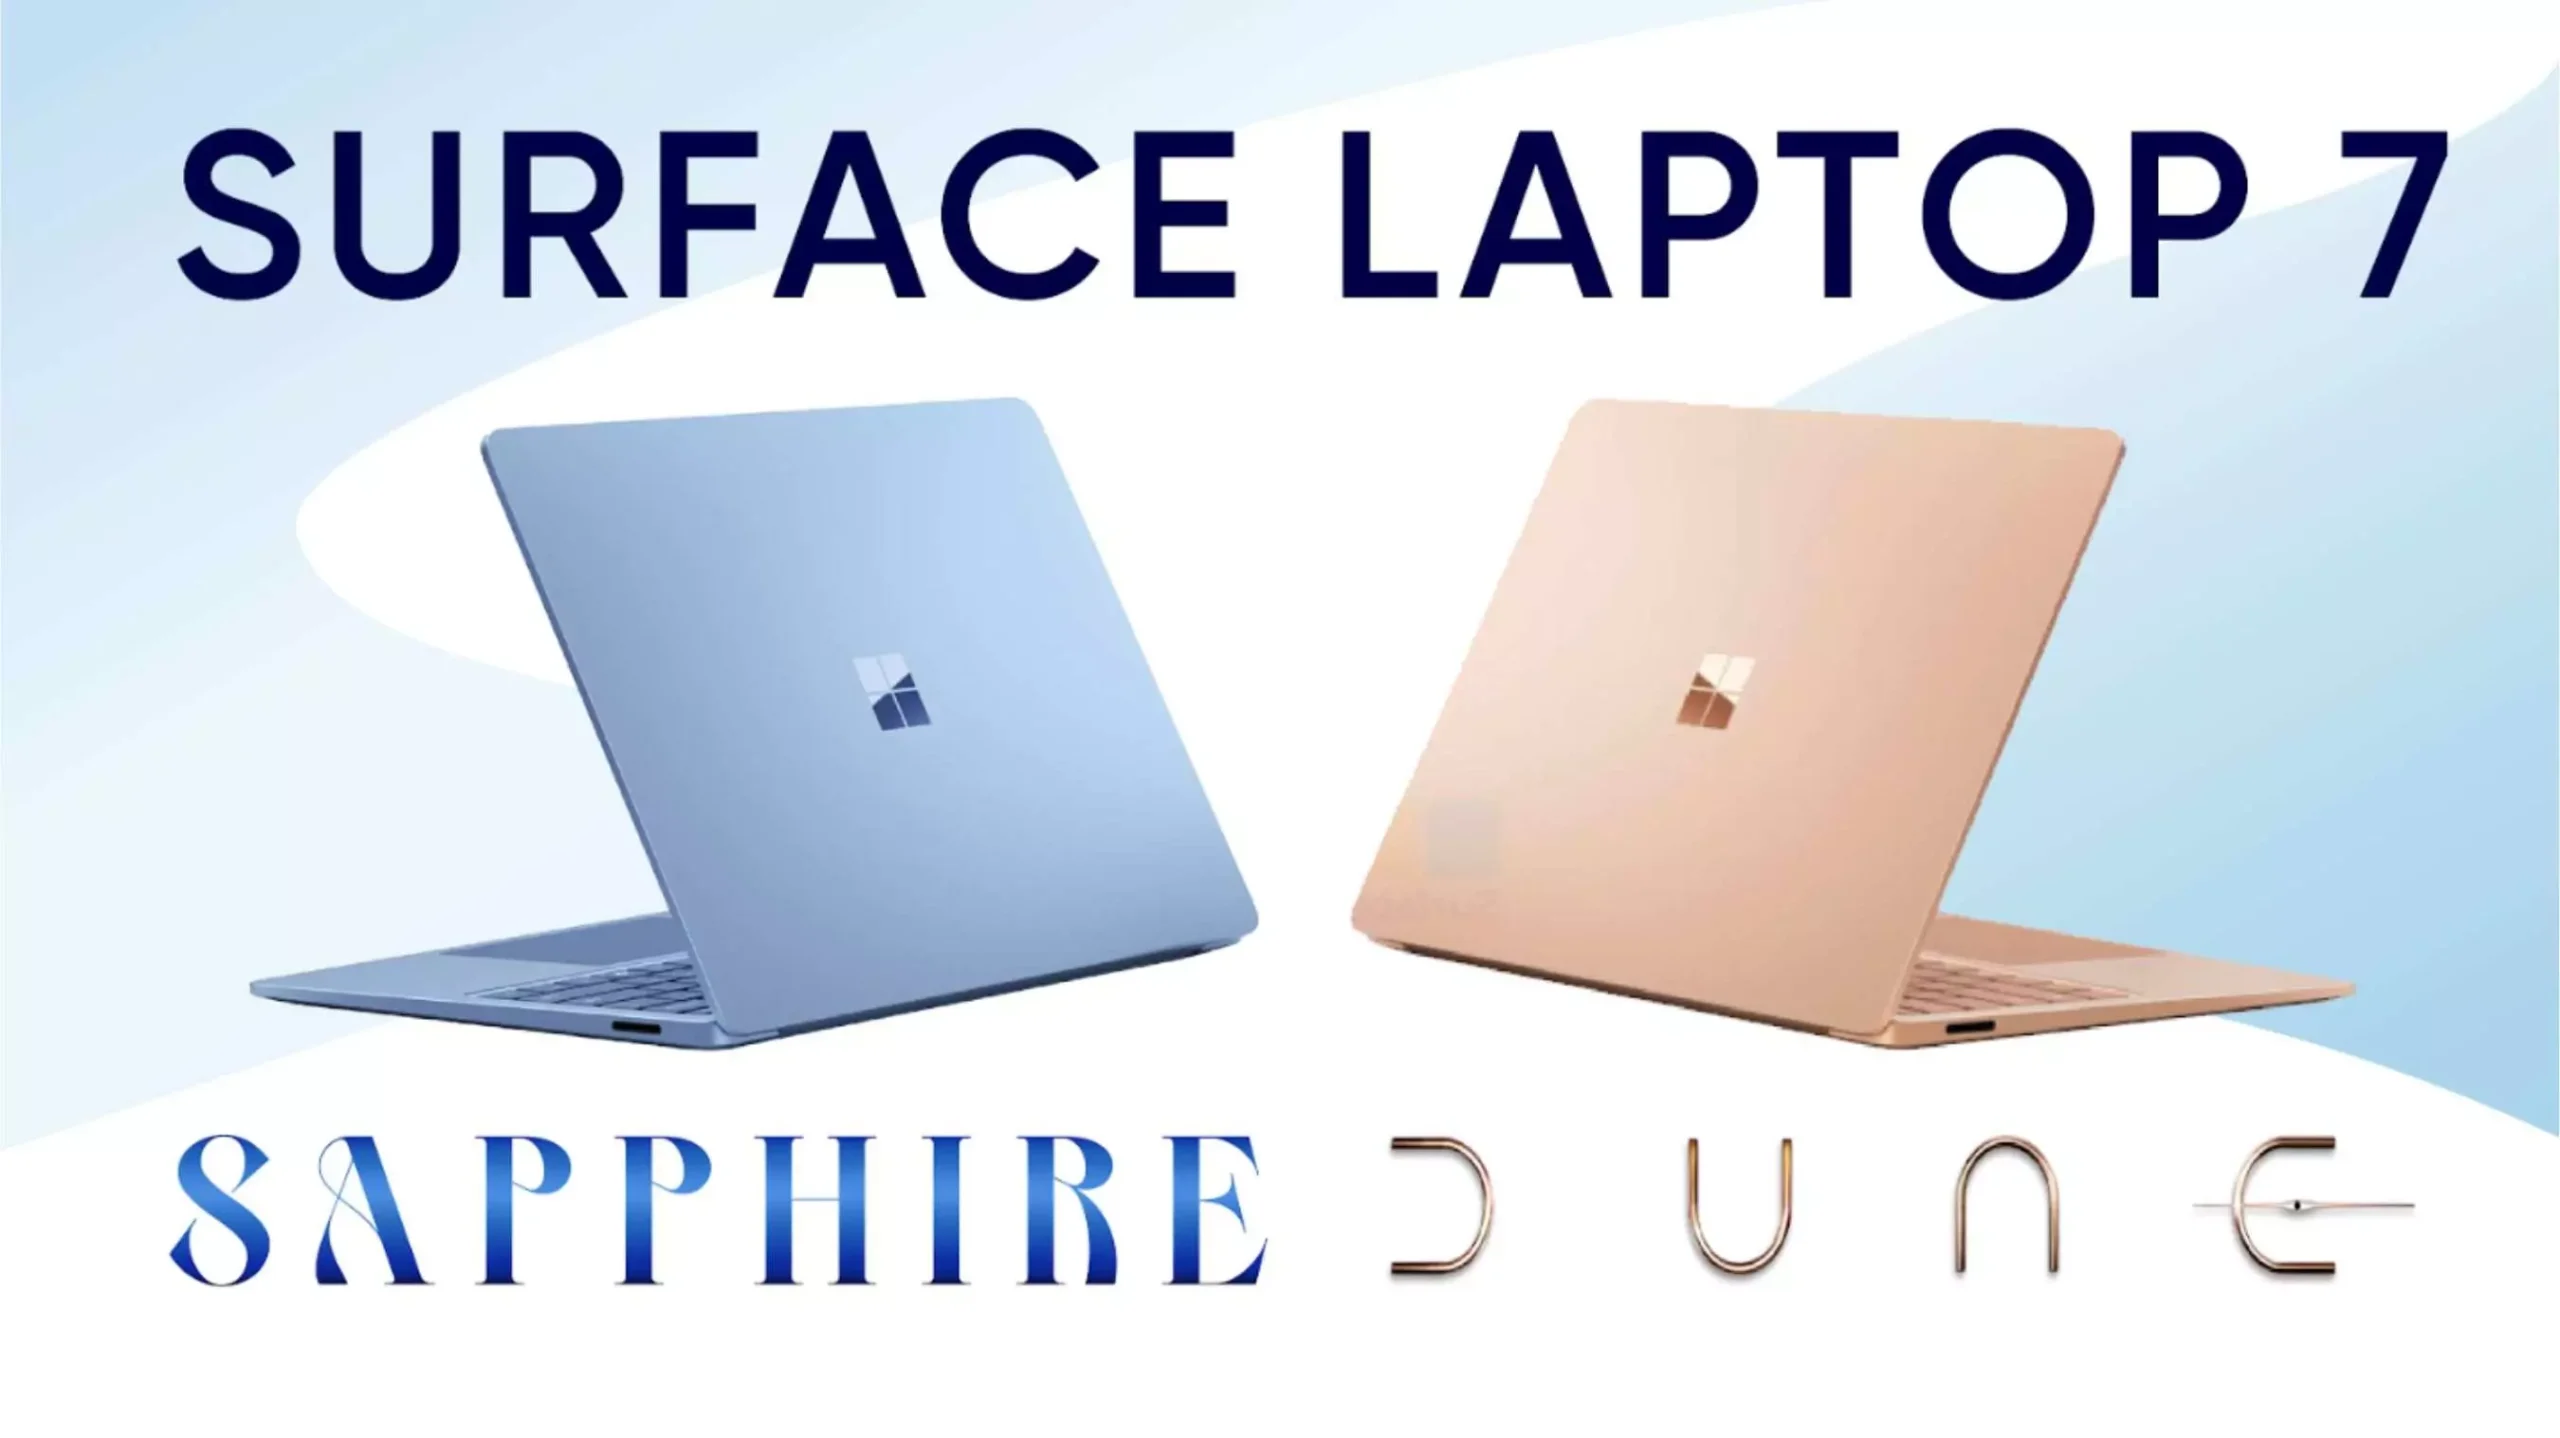 Surface Laptop 7 Sapphire và Dune: Chọn màu nào hợp gu?